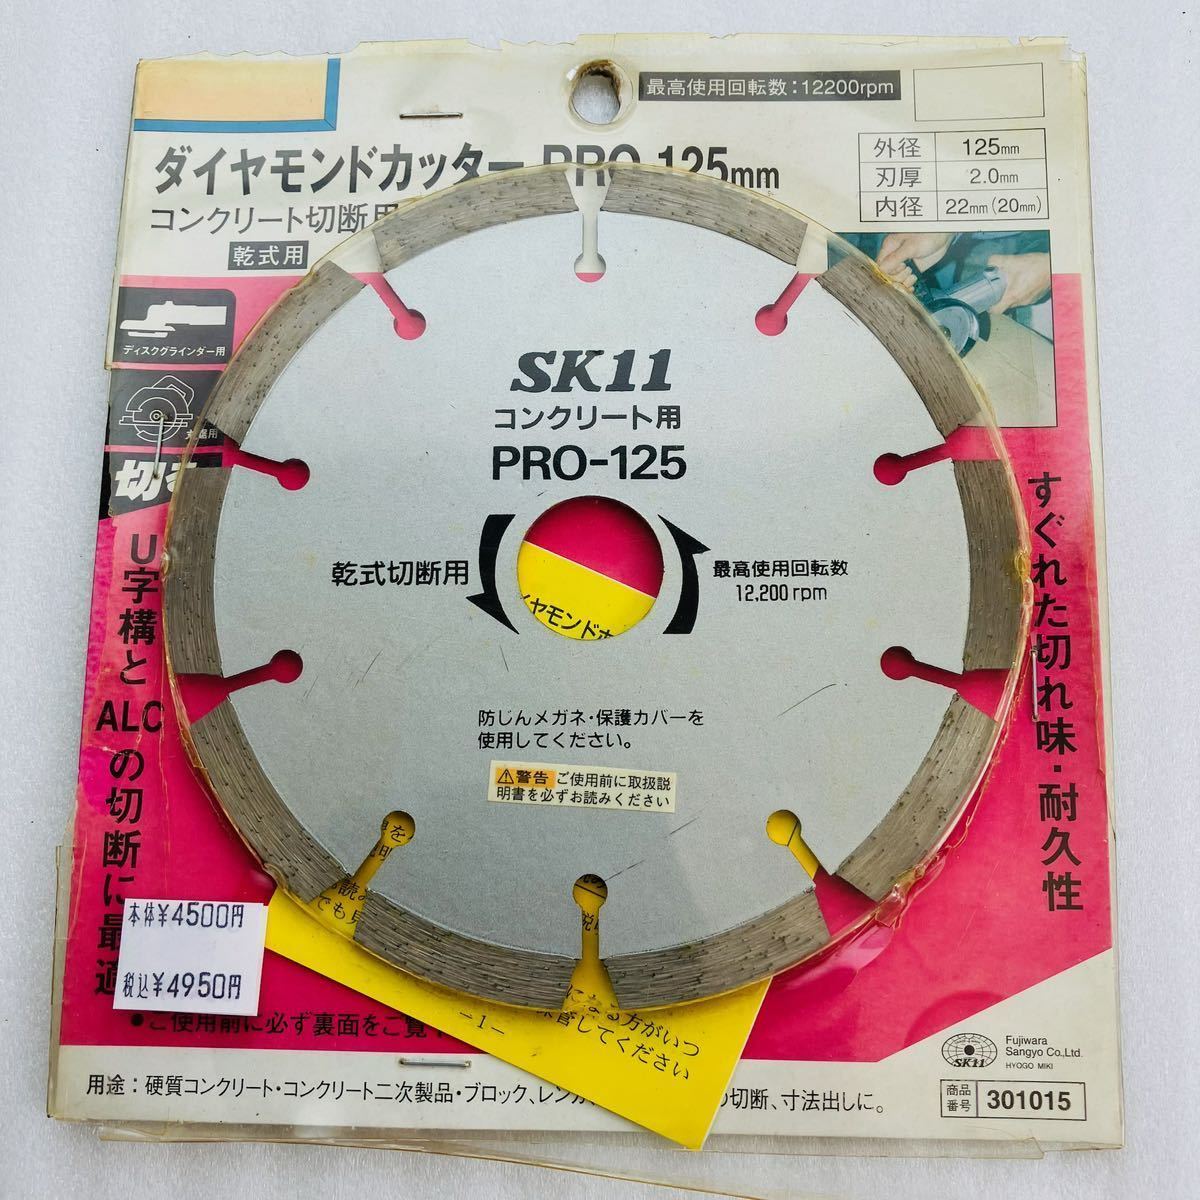  бриллиант резчик SK11 PRO-125 наружный диаметр 125mm лезвие толщина 2.0mm внутренний диаметр 22mm сухой dry модель Fujiwara промышленность 